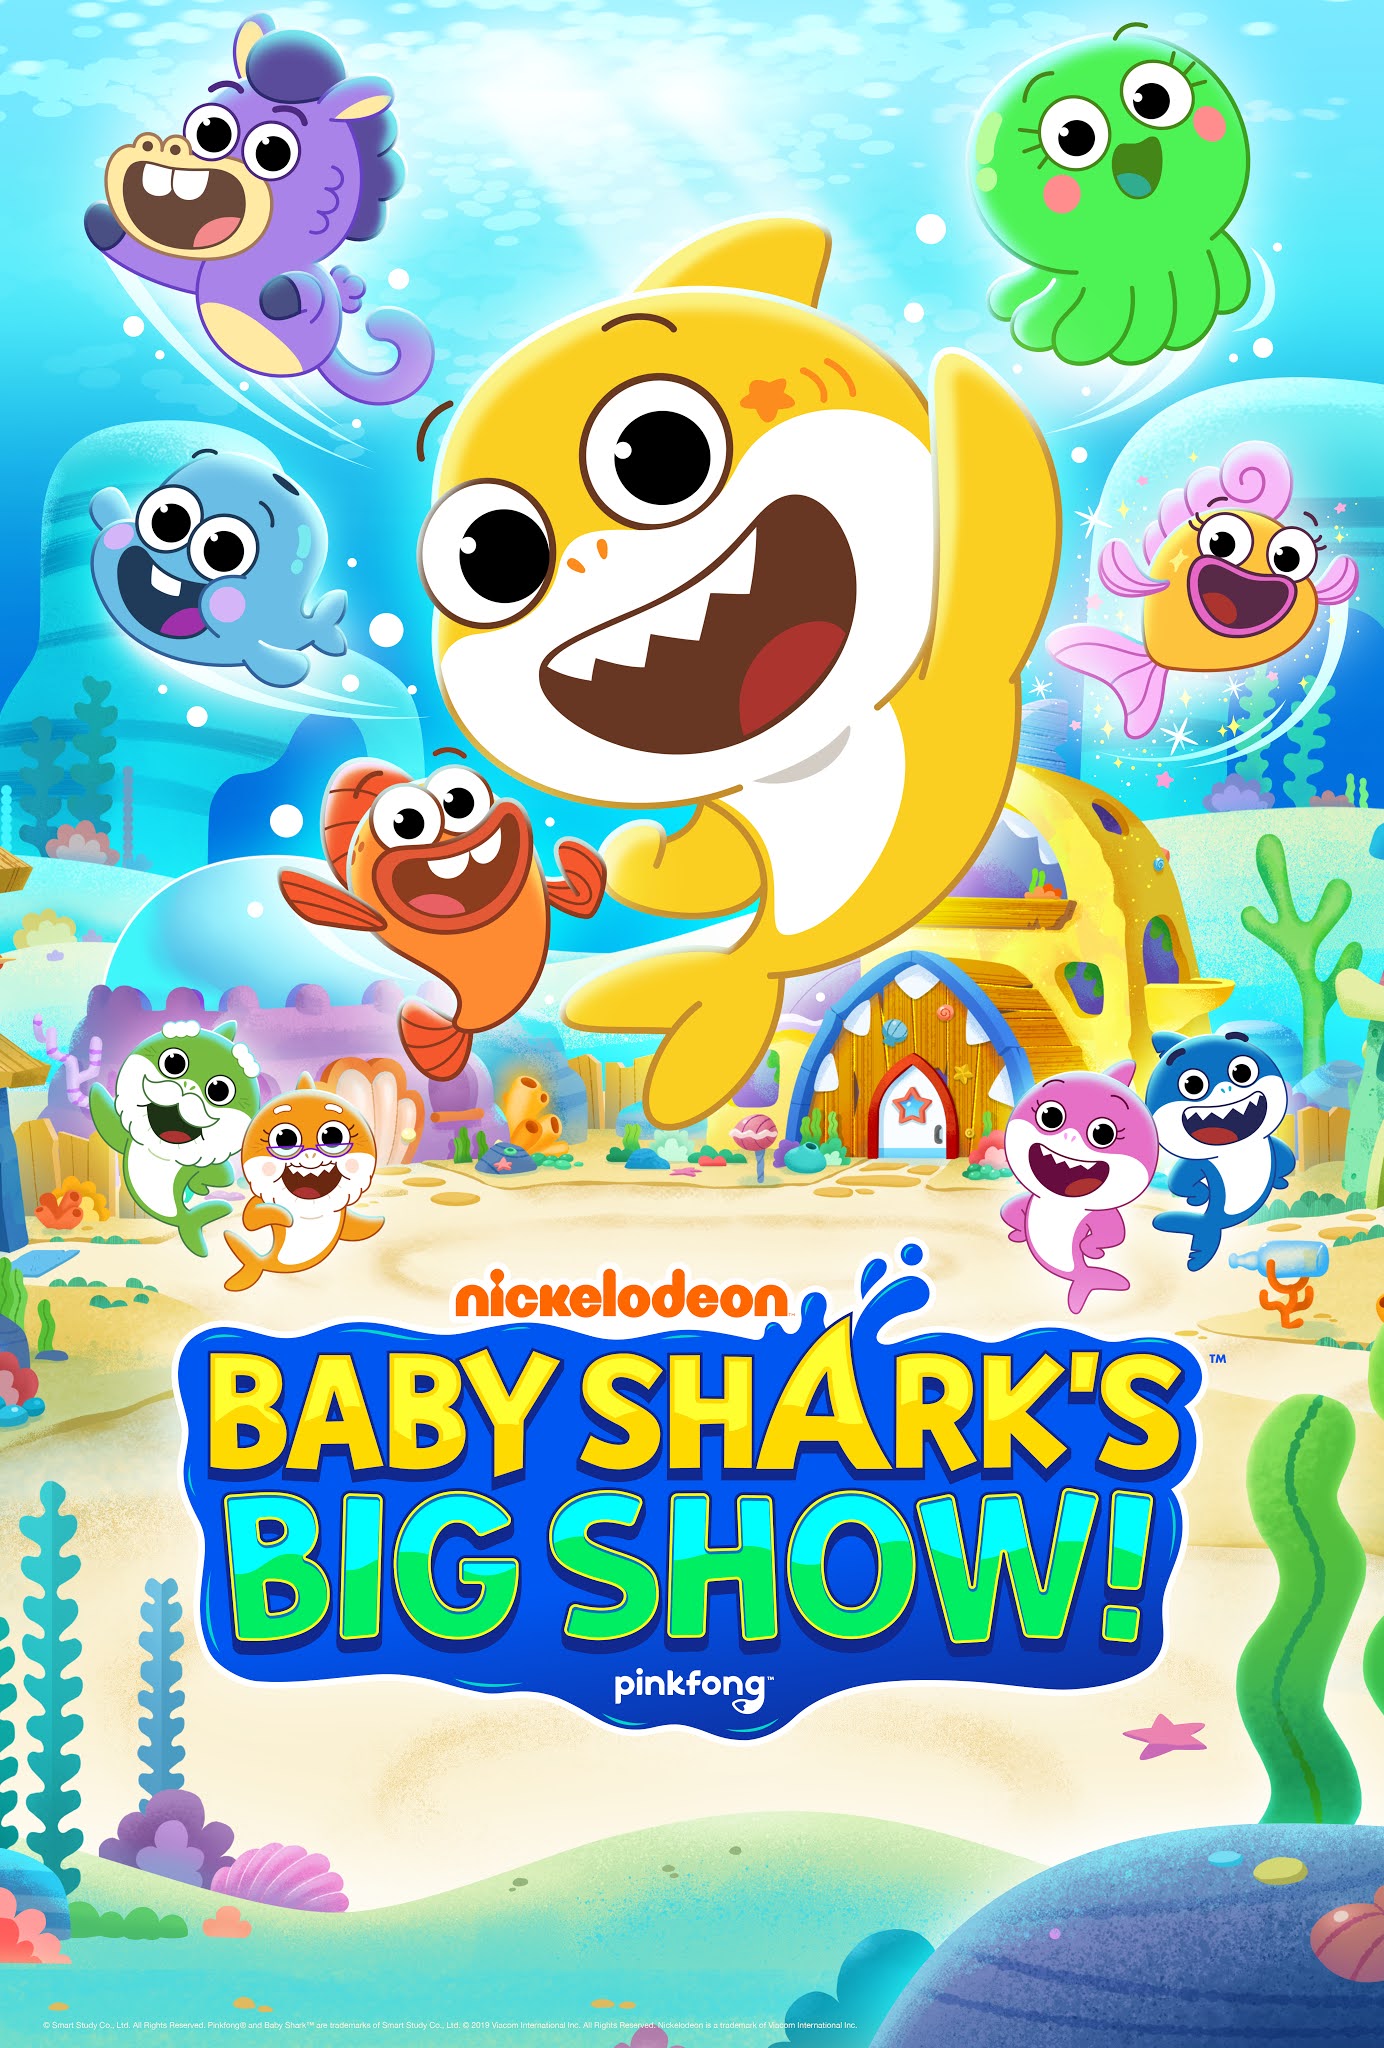 NickALive!: Nickelodeon's Brand-New Preschool Series 'Baby Shark’s Big